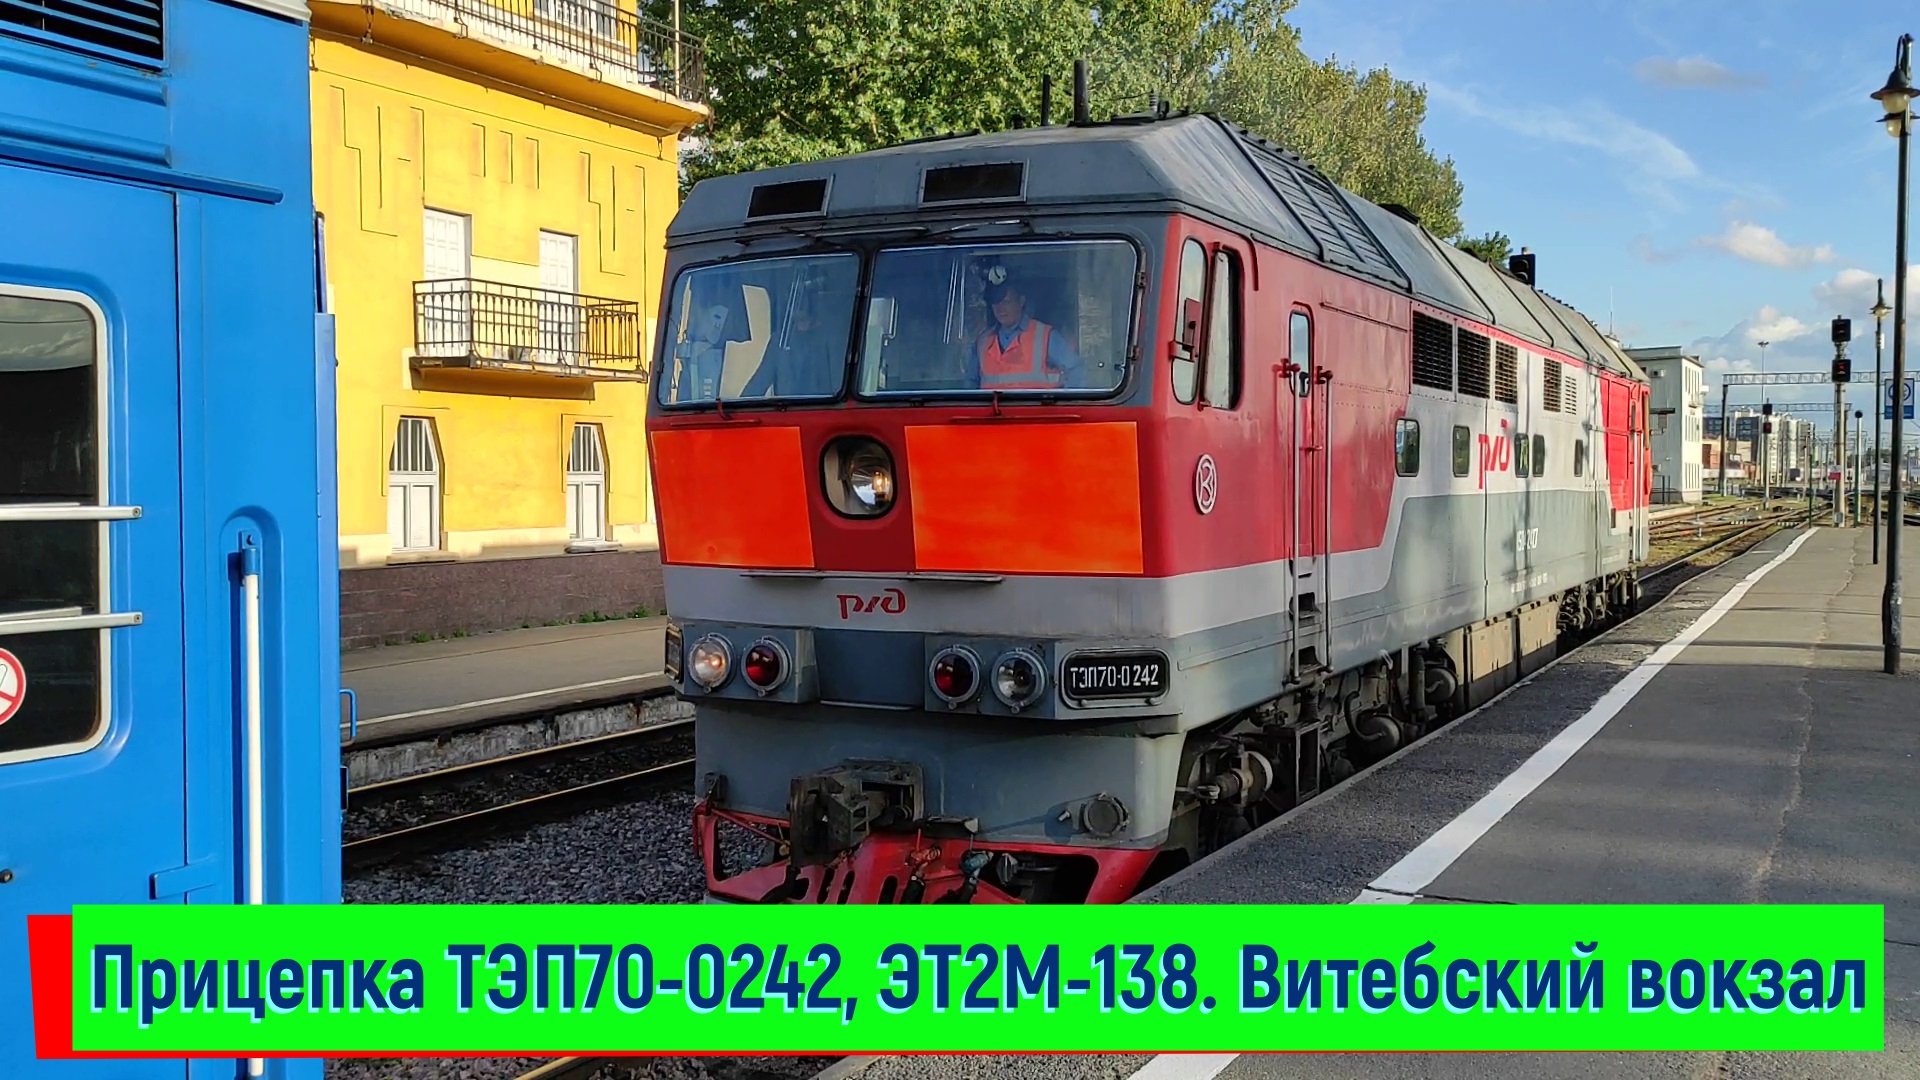 Прицепка ТЭП70-0242 к поезду №051 Санкт-Петербург — Брест и ЭТ2М-138. Витебский вокзал